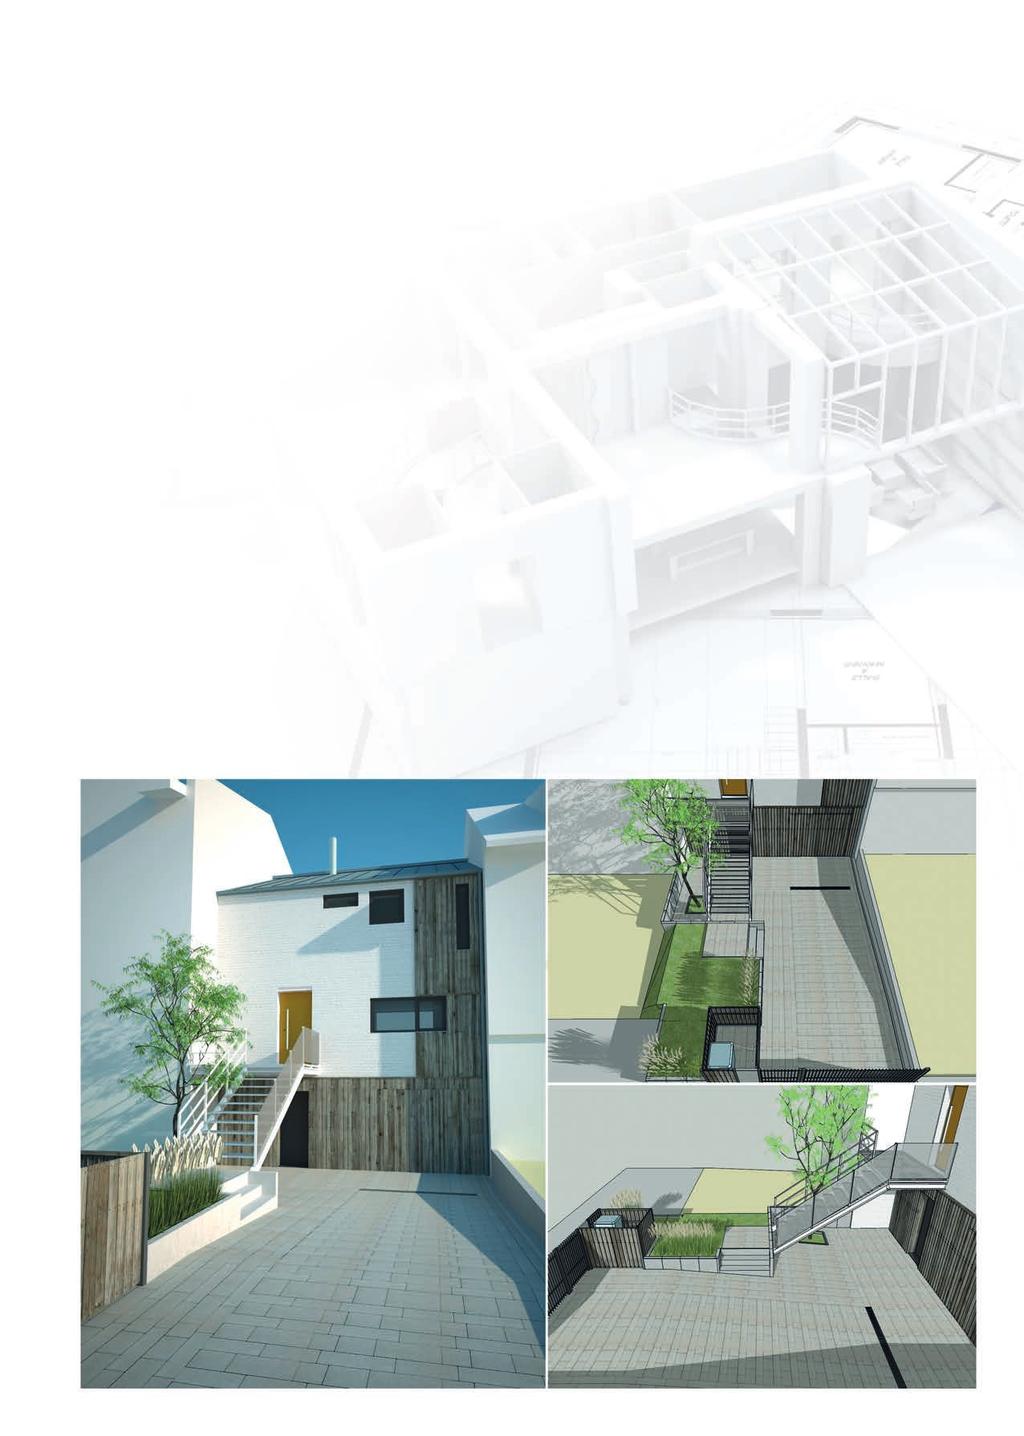 WSPÓŁPRACA Z PROJEKTANTAMI Materiały przygotowane dla architektów i projektantów do pobrania na stronie: www.buszrem.